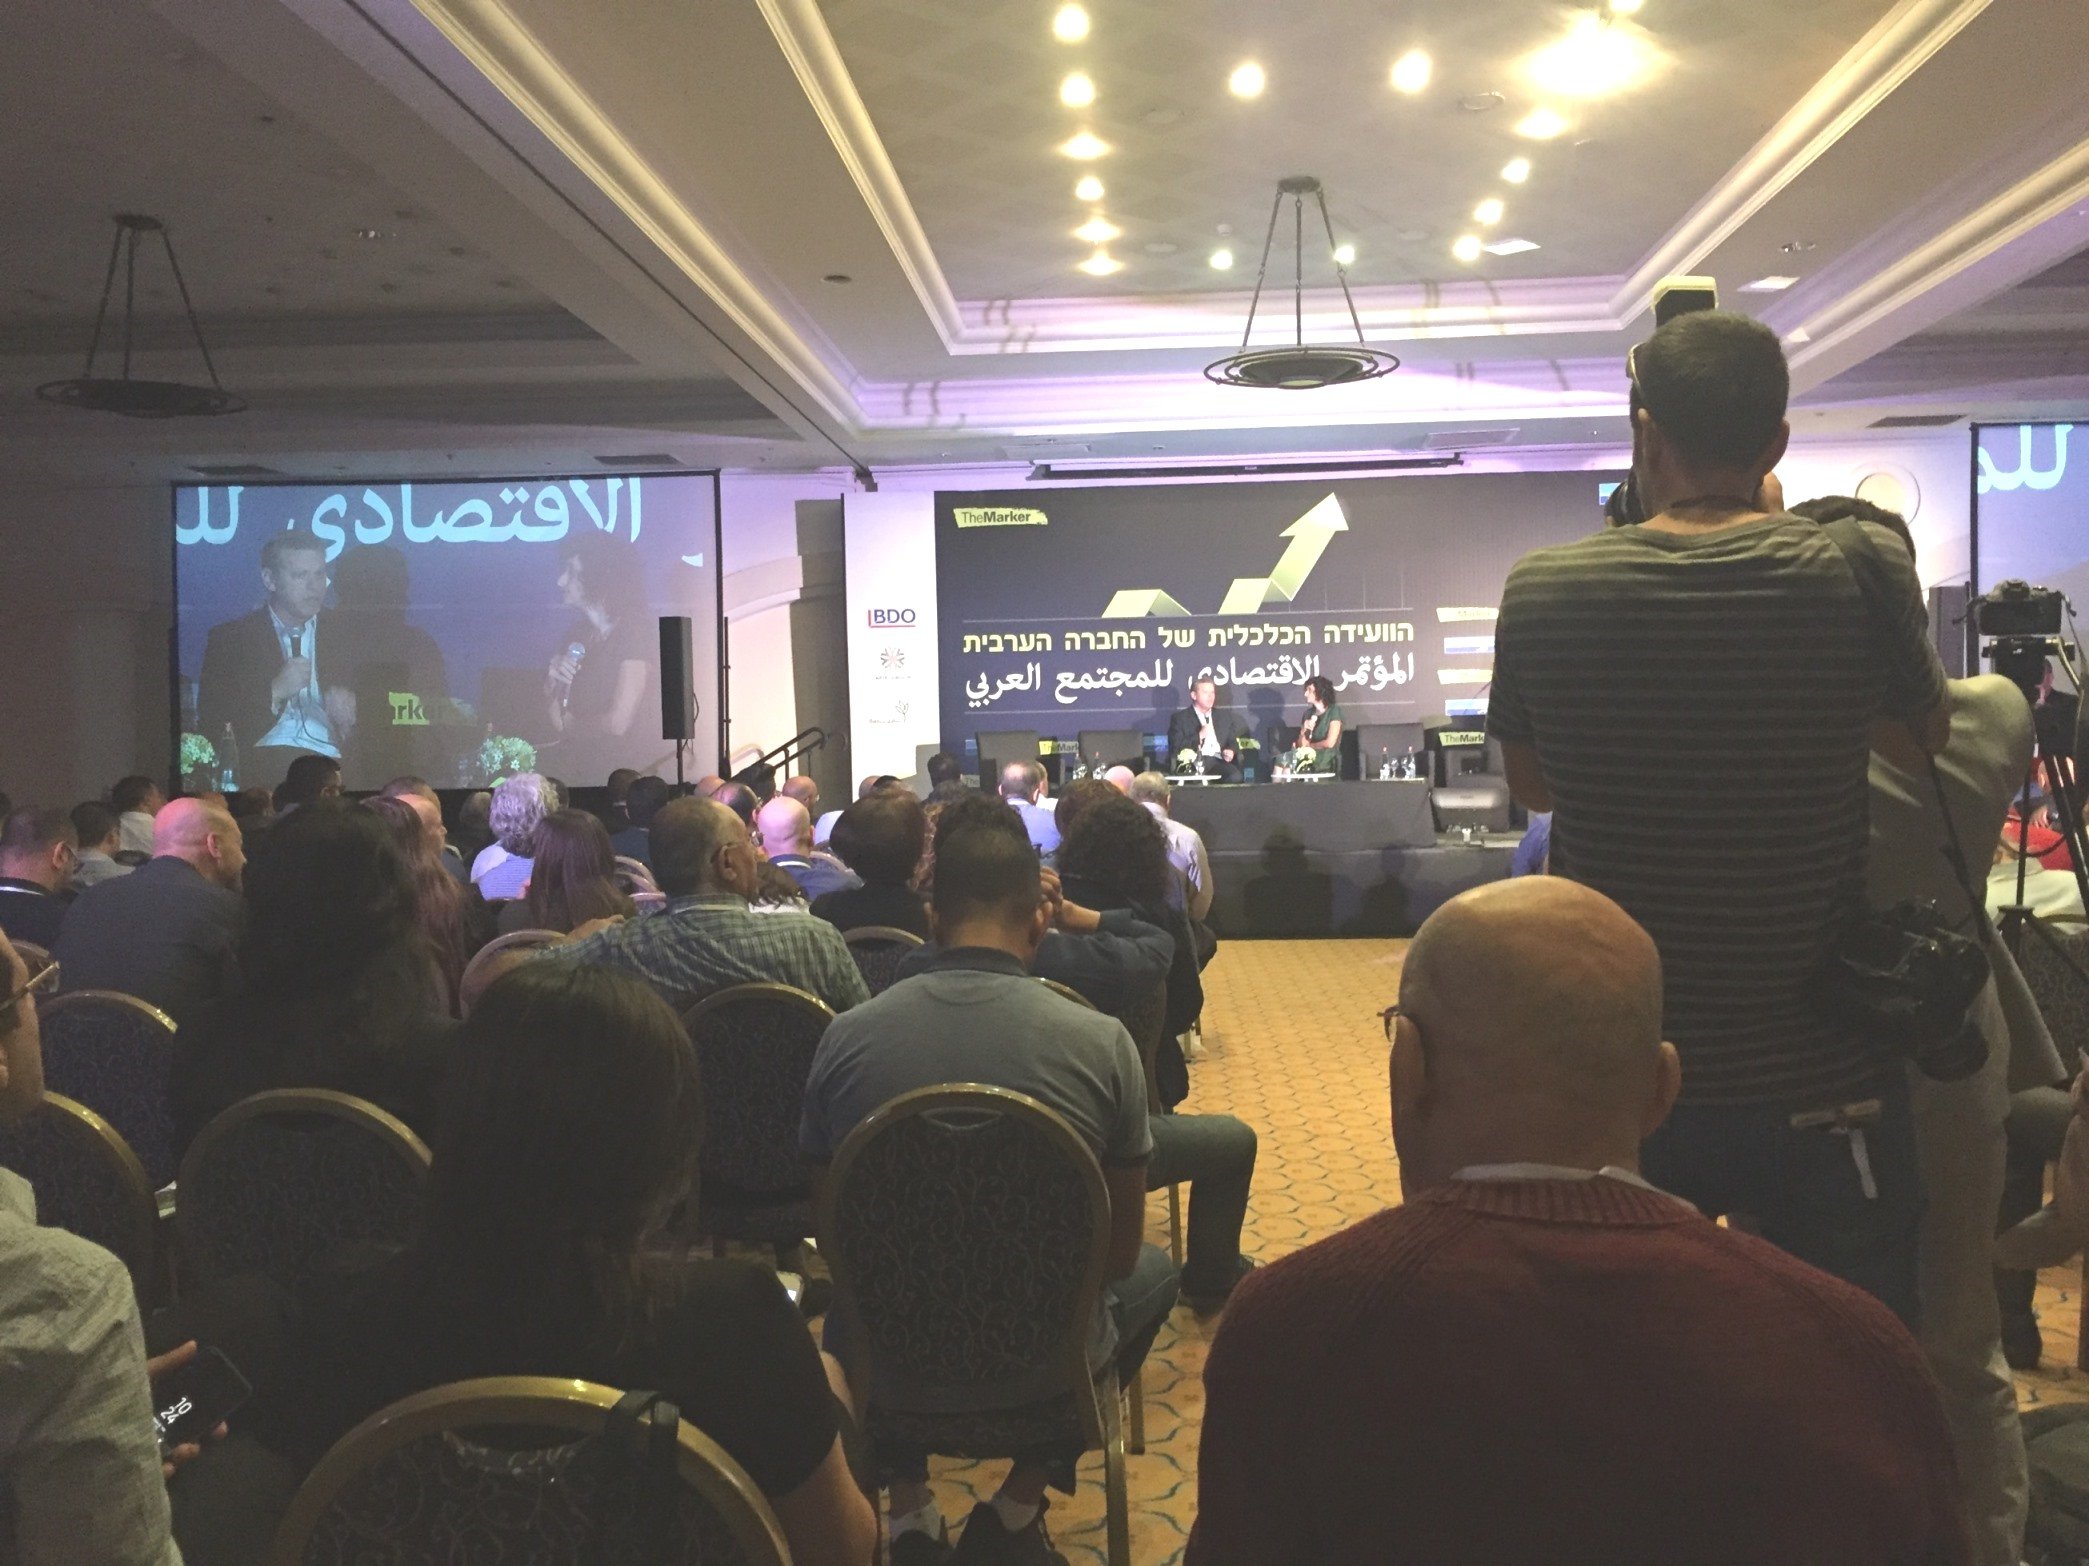 المؤتمر الاقتصادي للمجتمع العربي يدعم أصحاب المصالح!-22